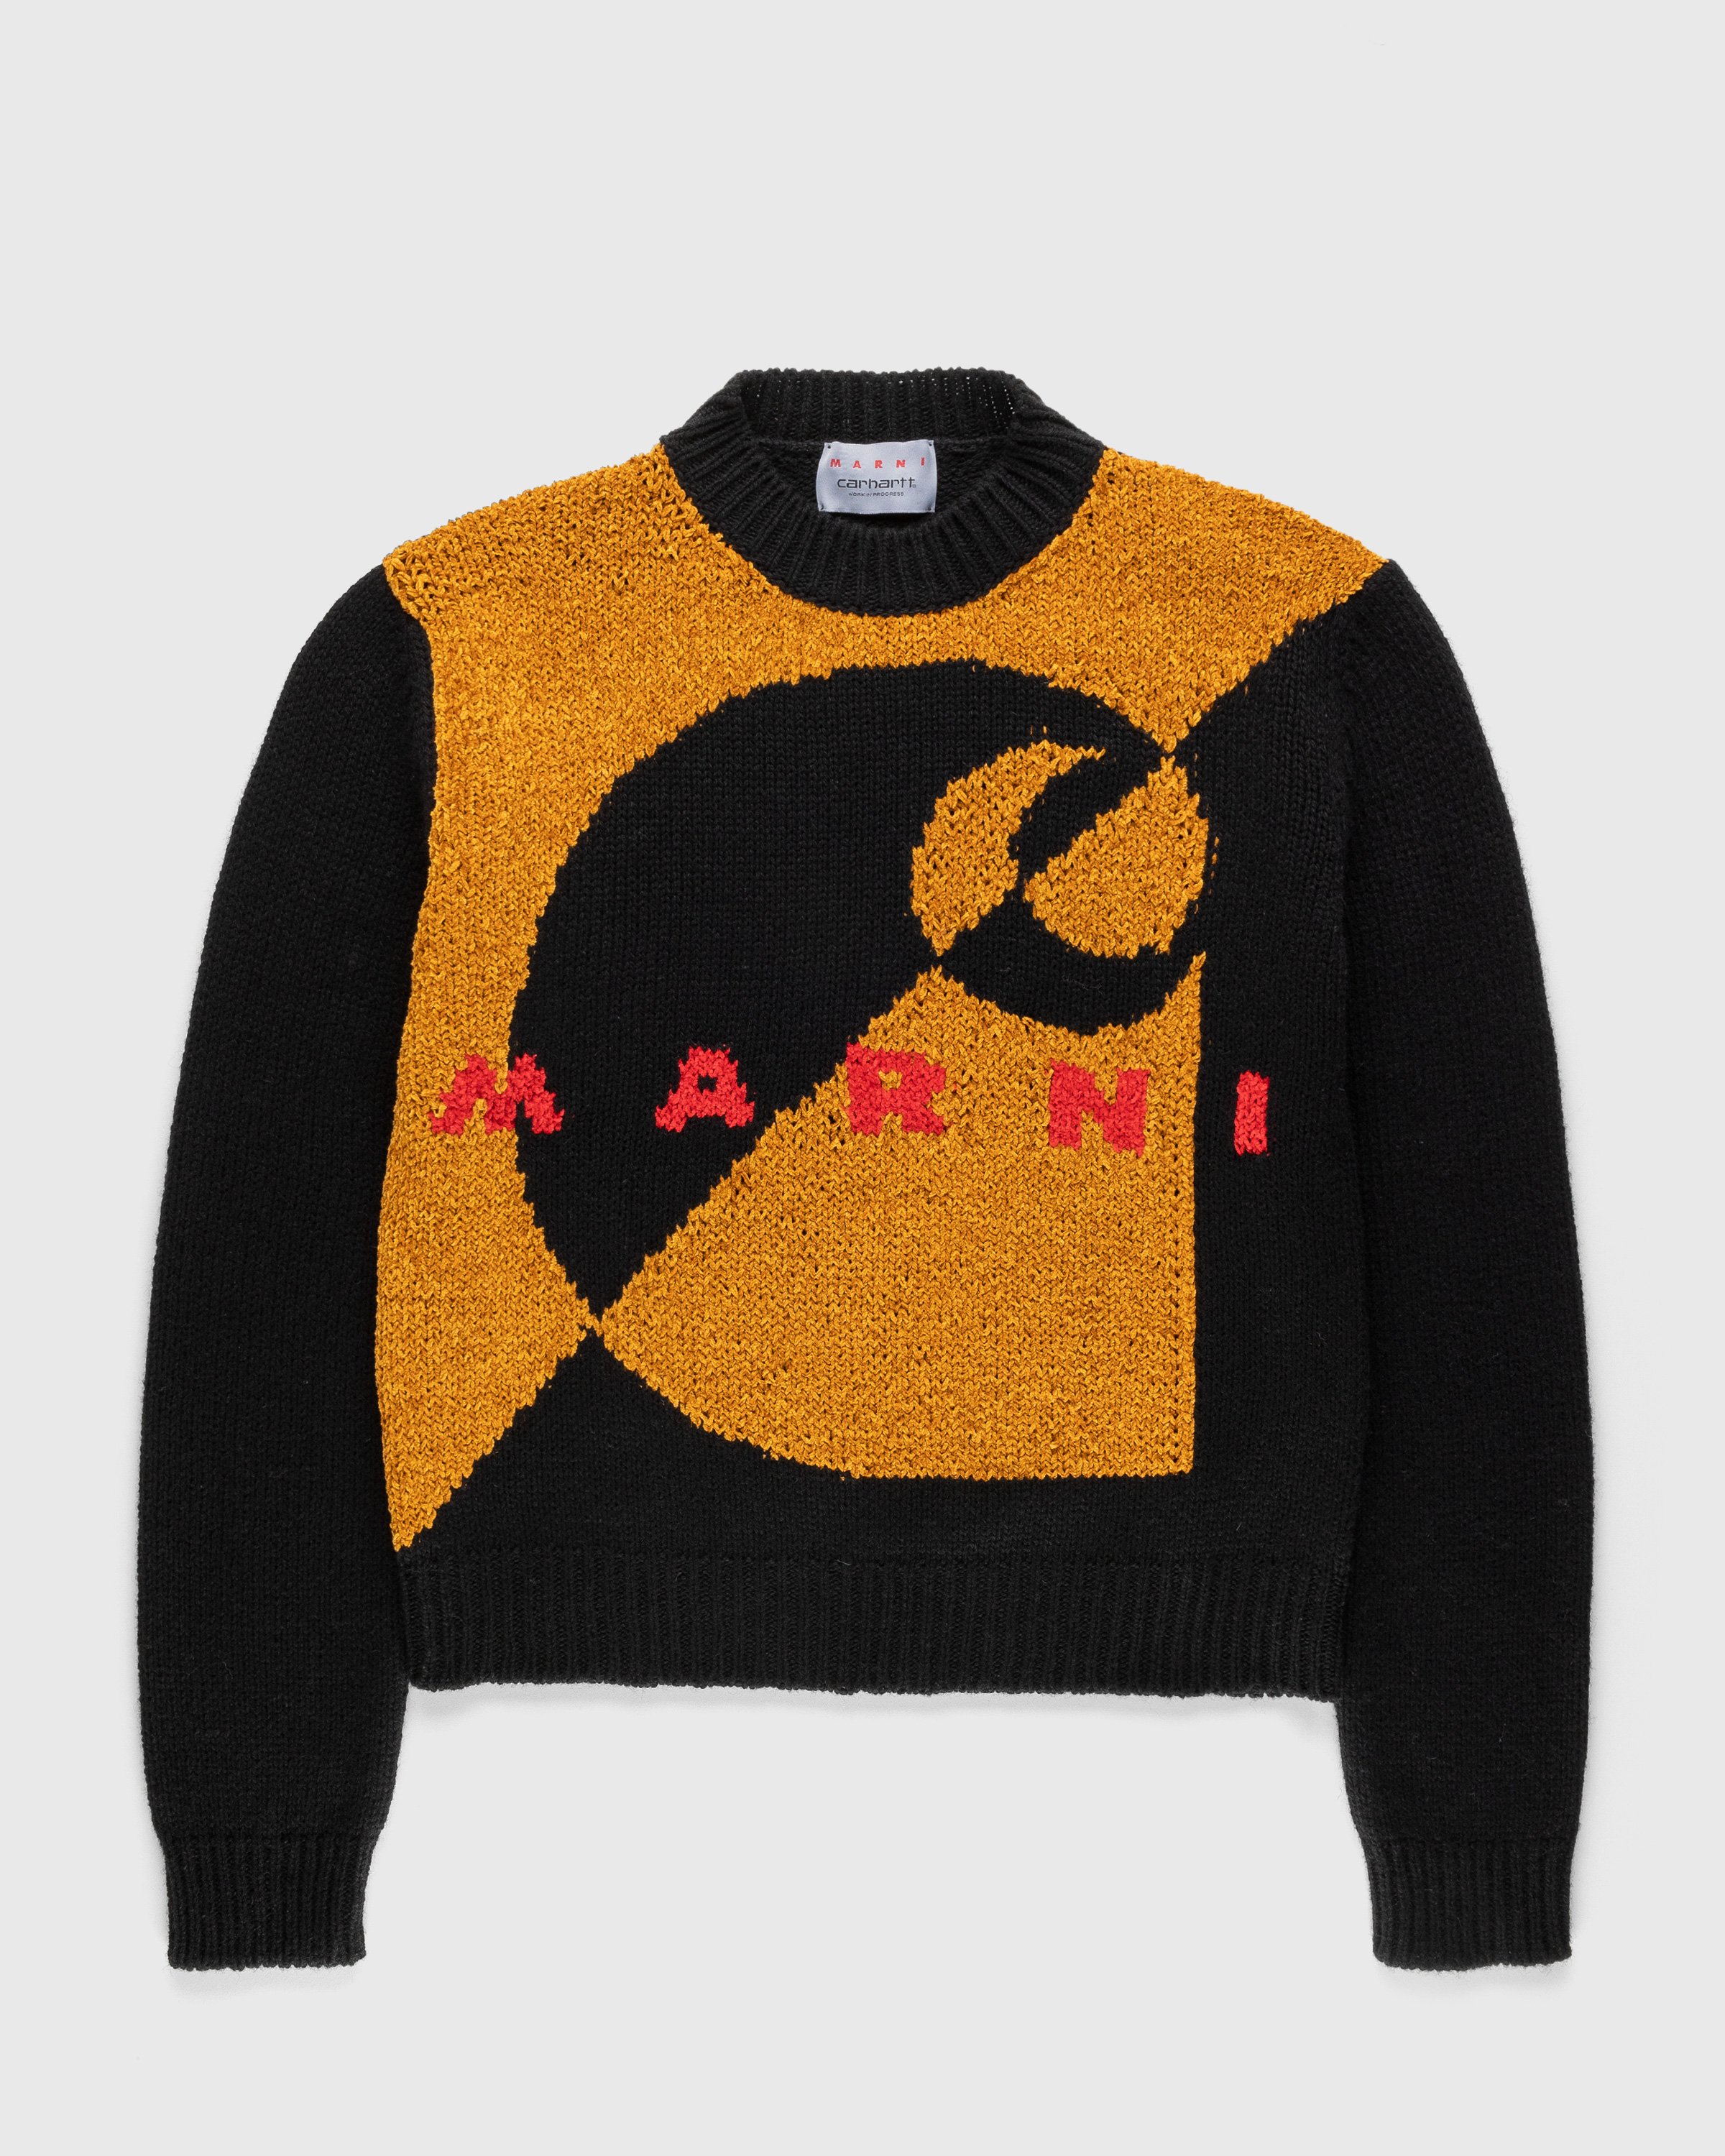 Marni x Carhartt WIP - Intarsia Logo Sweater Brown - Clothing - Brown - Image 1